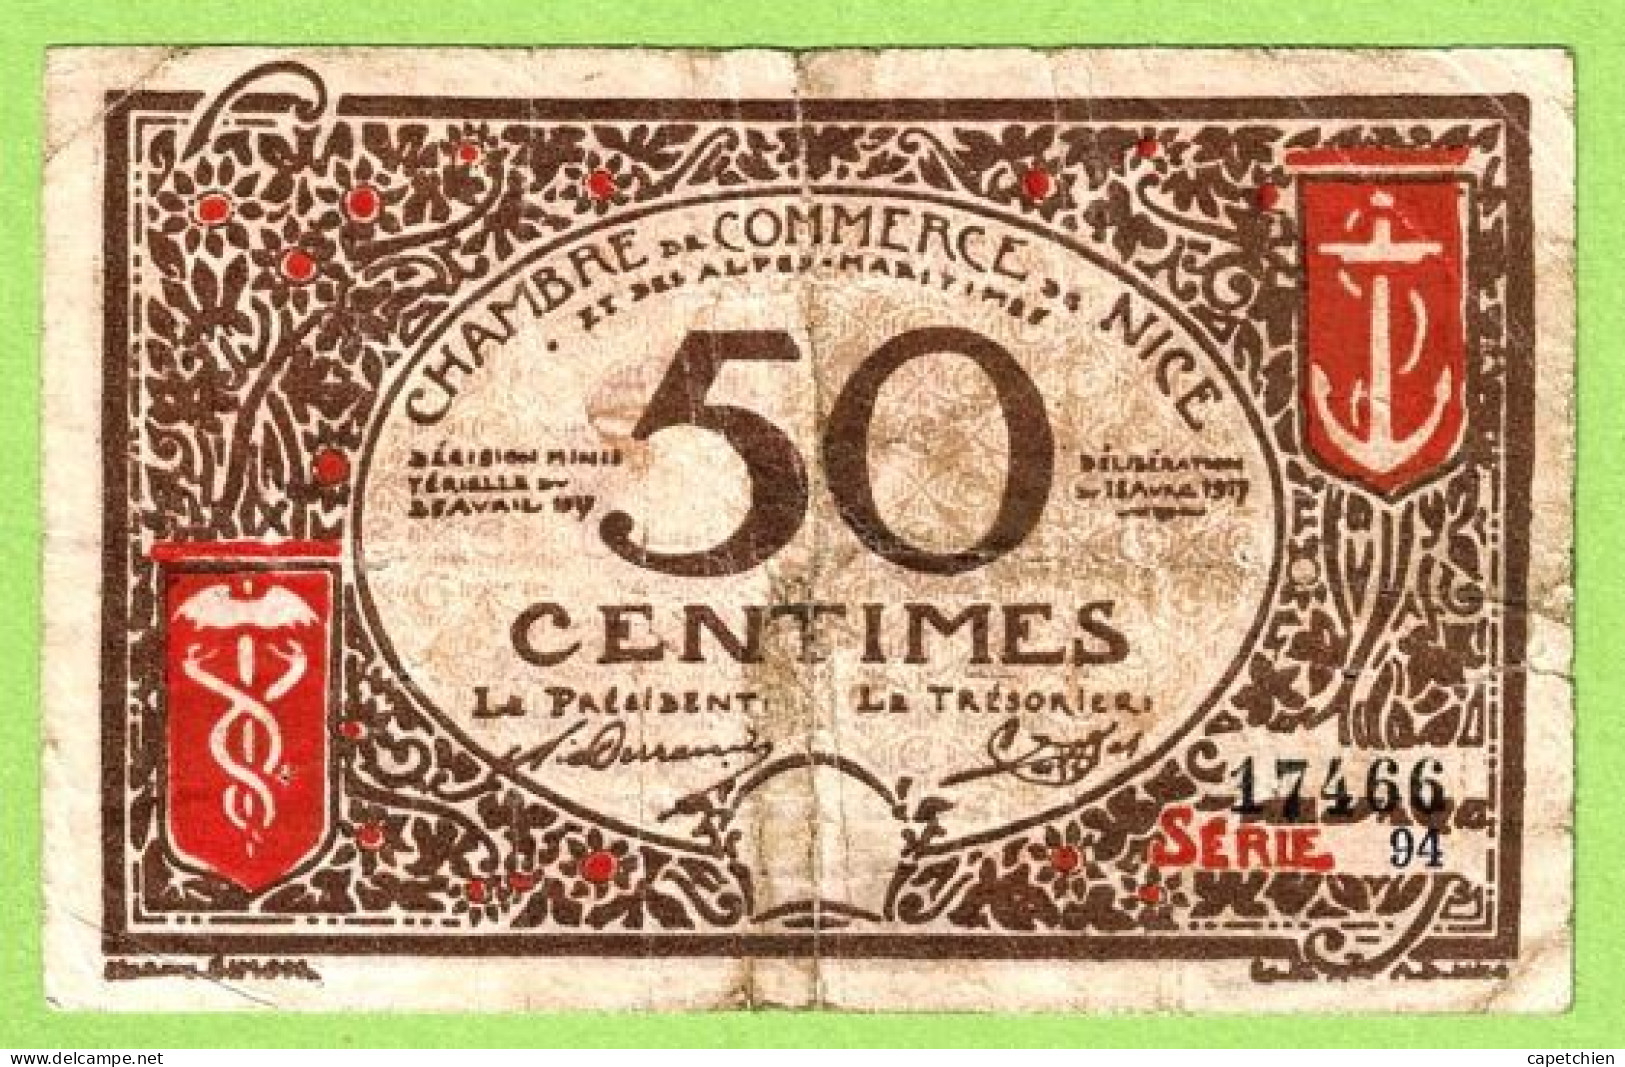 FRANCE / CHAMBRE De COMMERCE / NICE - ALPES MARITIMES / 50 CENTIMES / 1917 - 1921 SURCHARGE 1920 - 1921 / N° 17466 - Chambre De Commerce